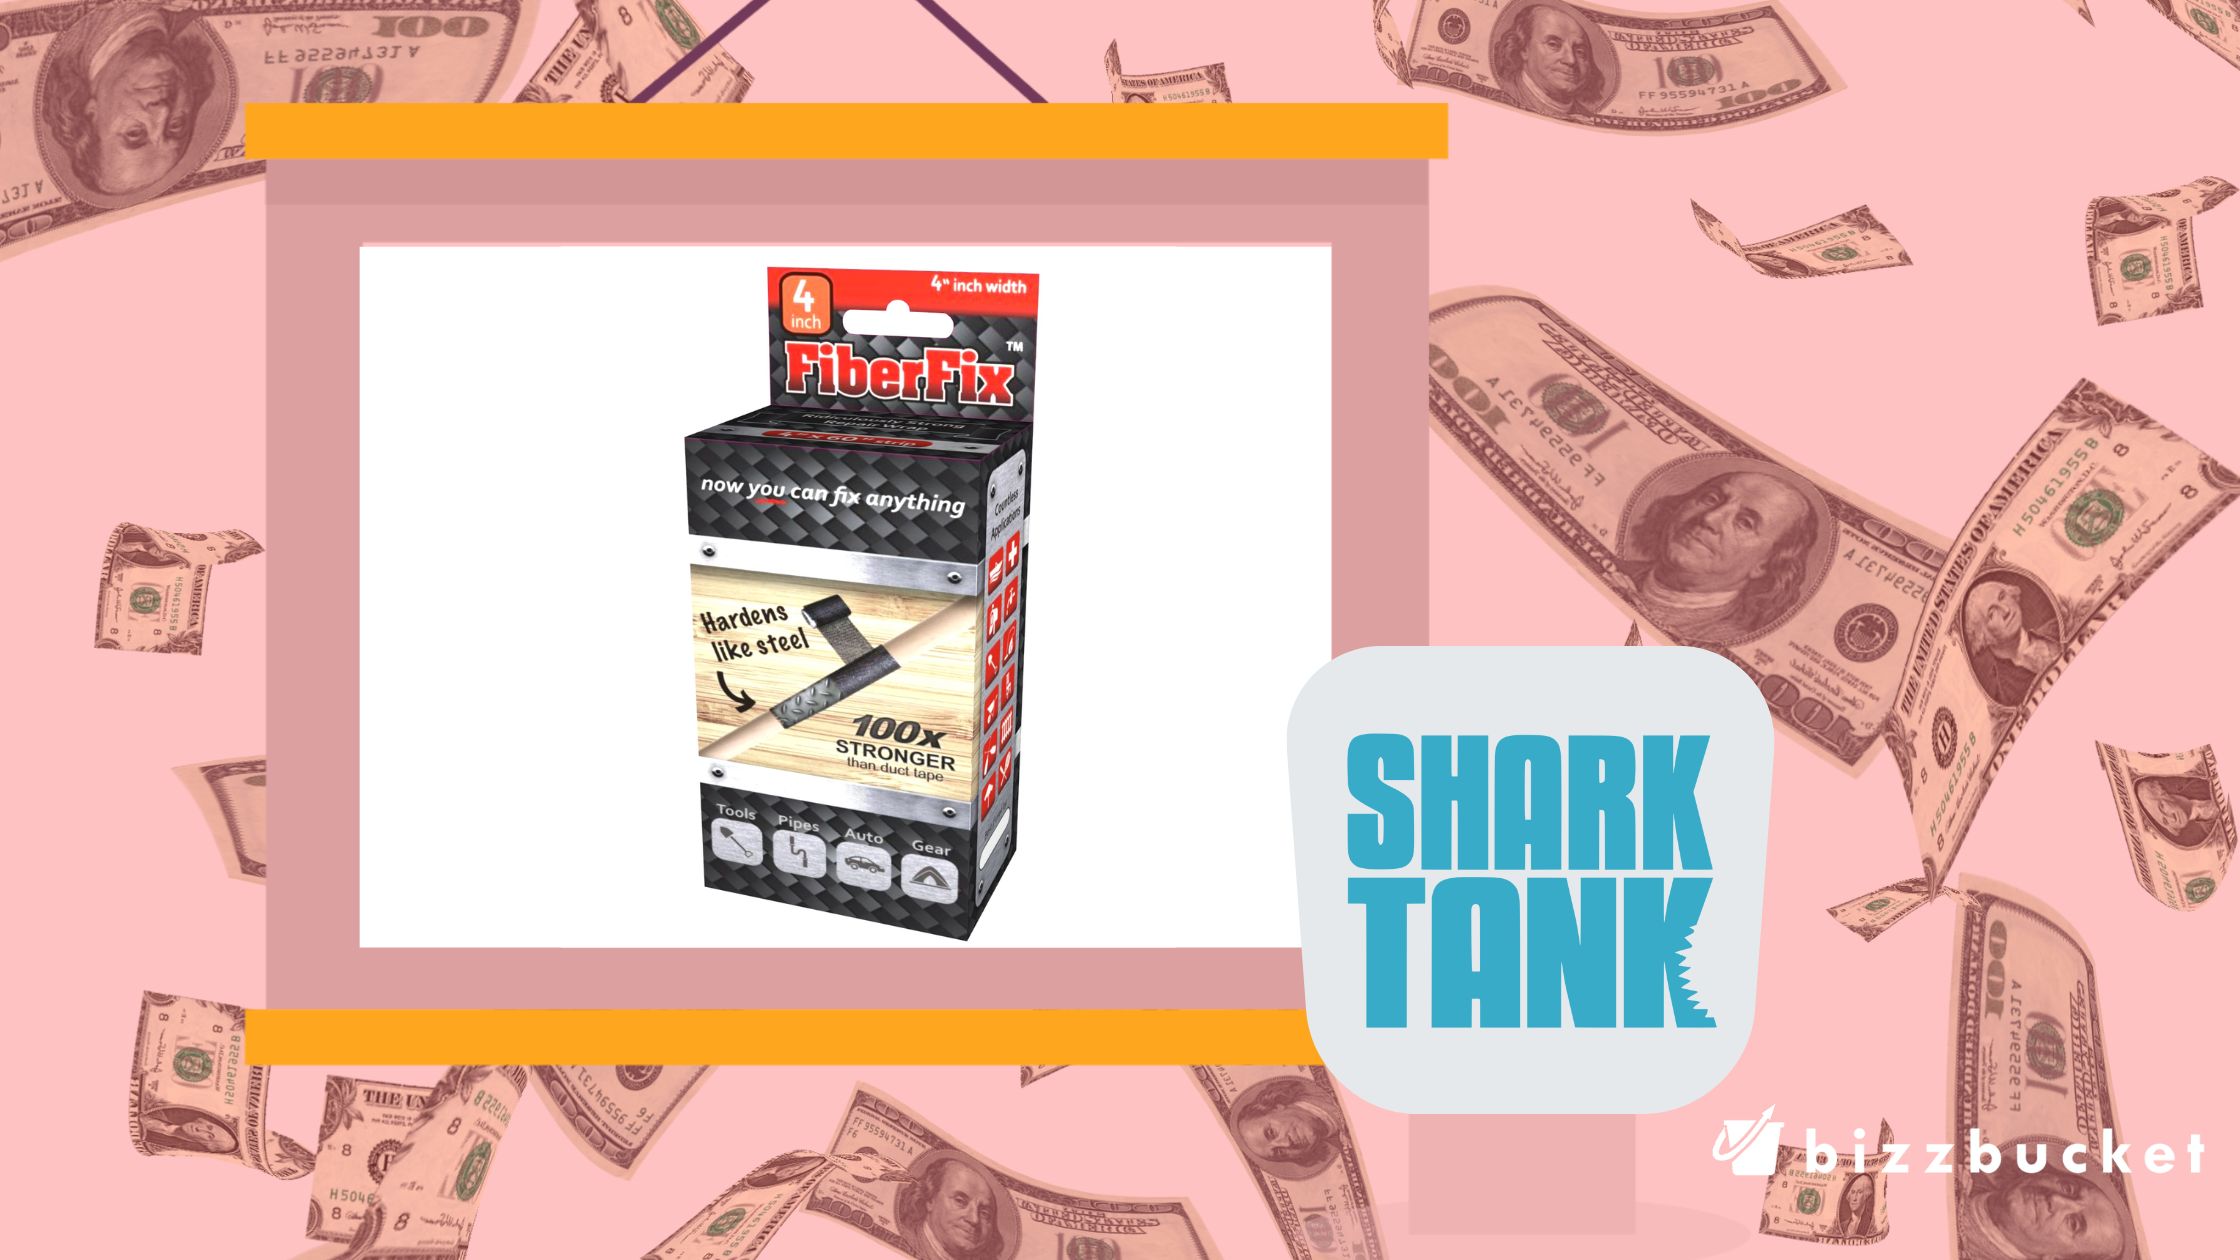 FiberFix shark tank update